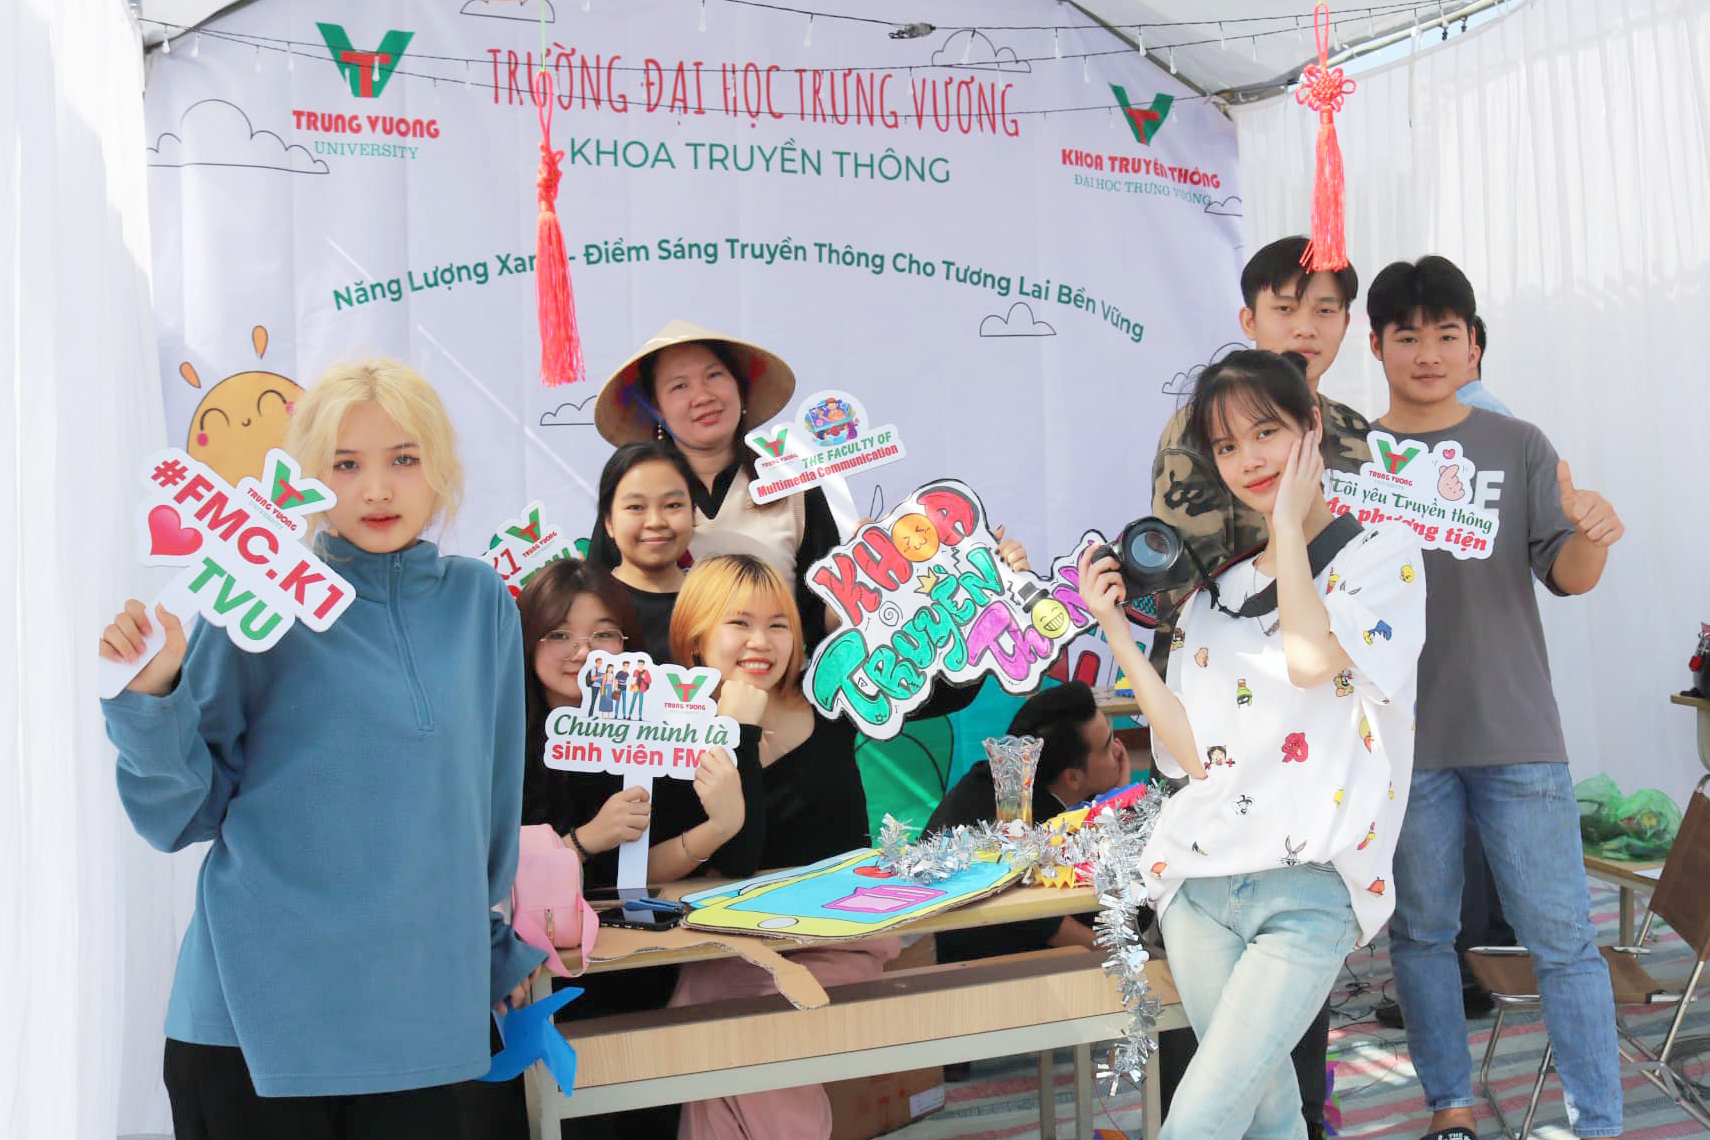 Sinh viên Truyền thông tạo nhiều dấu ấn trong cuộc thi thiết kế trại do trường Đại học Trưng Vương tổ chức cùng chuỗi hoạt động kỷ niệm Ngày nhà giáo Việt Nam 20/11_1